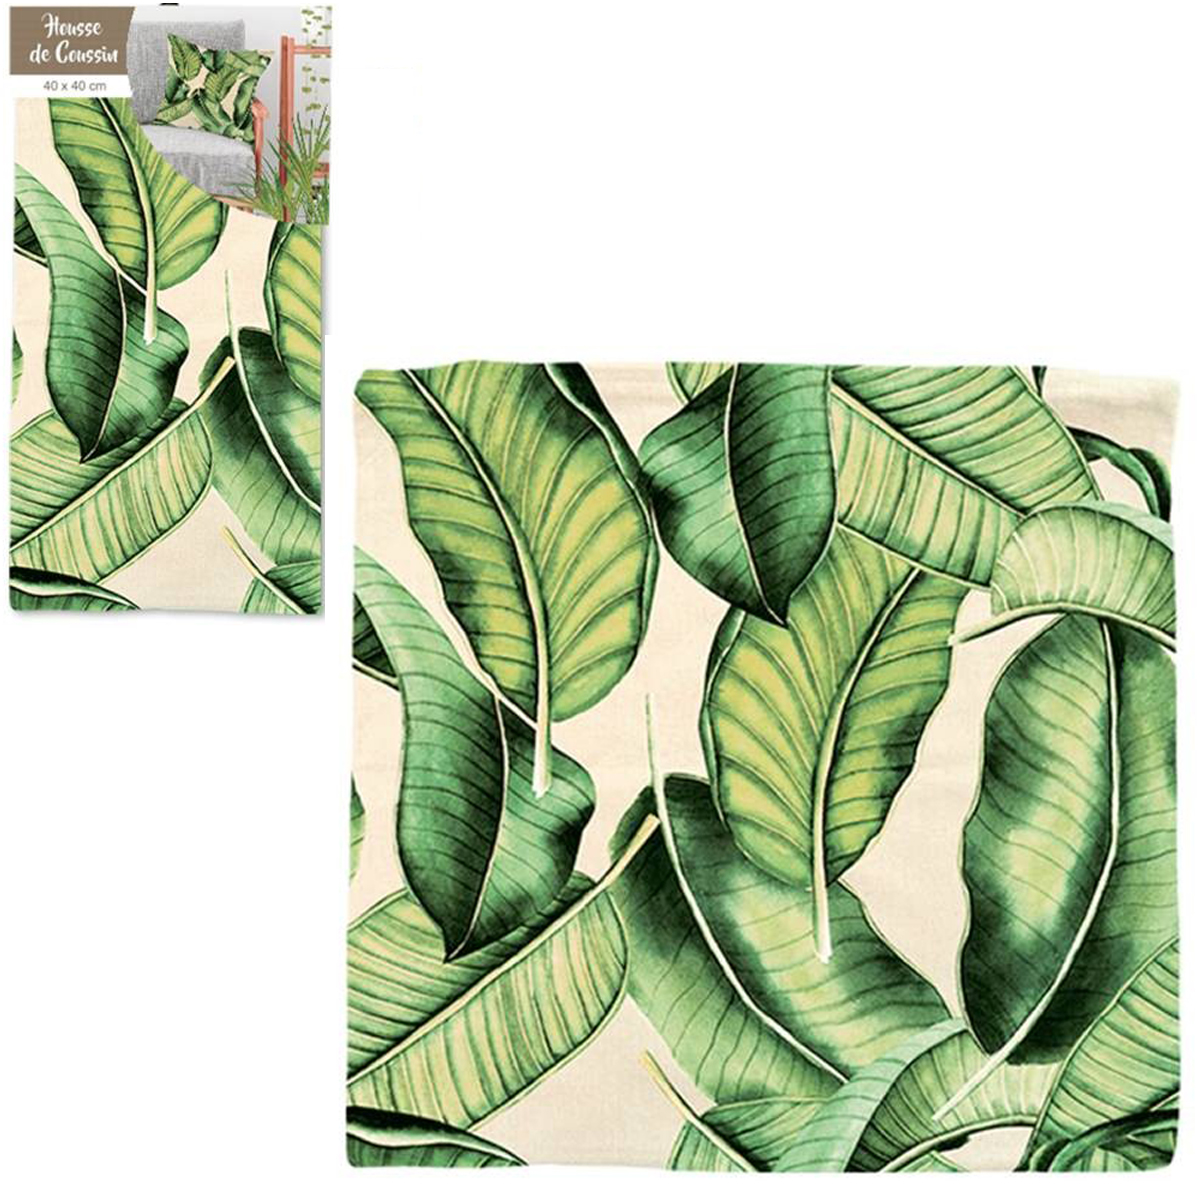 Housse de coussin coton \'Jungle\' beige vert (feuilles de bananier) - 40x40 cm - [Q2186]